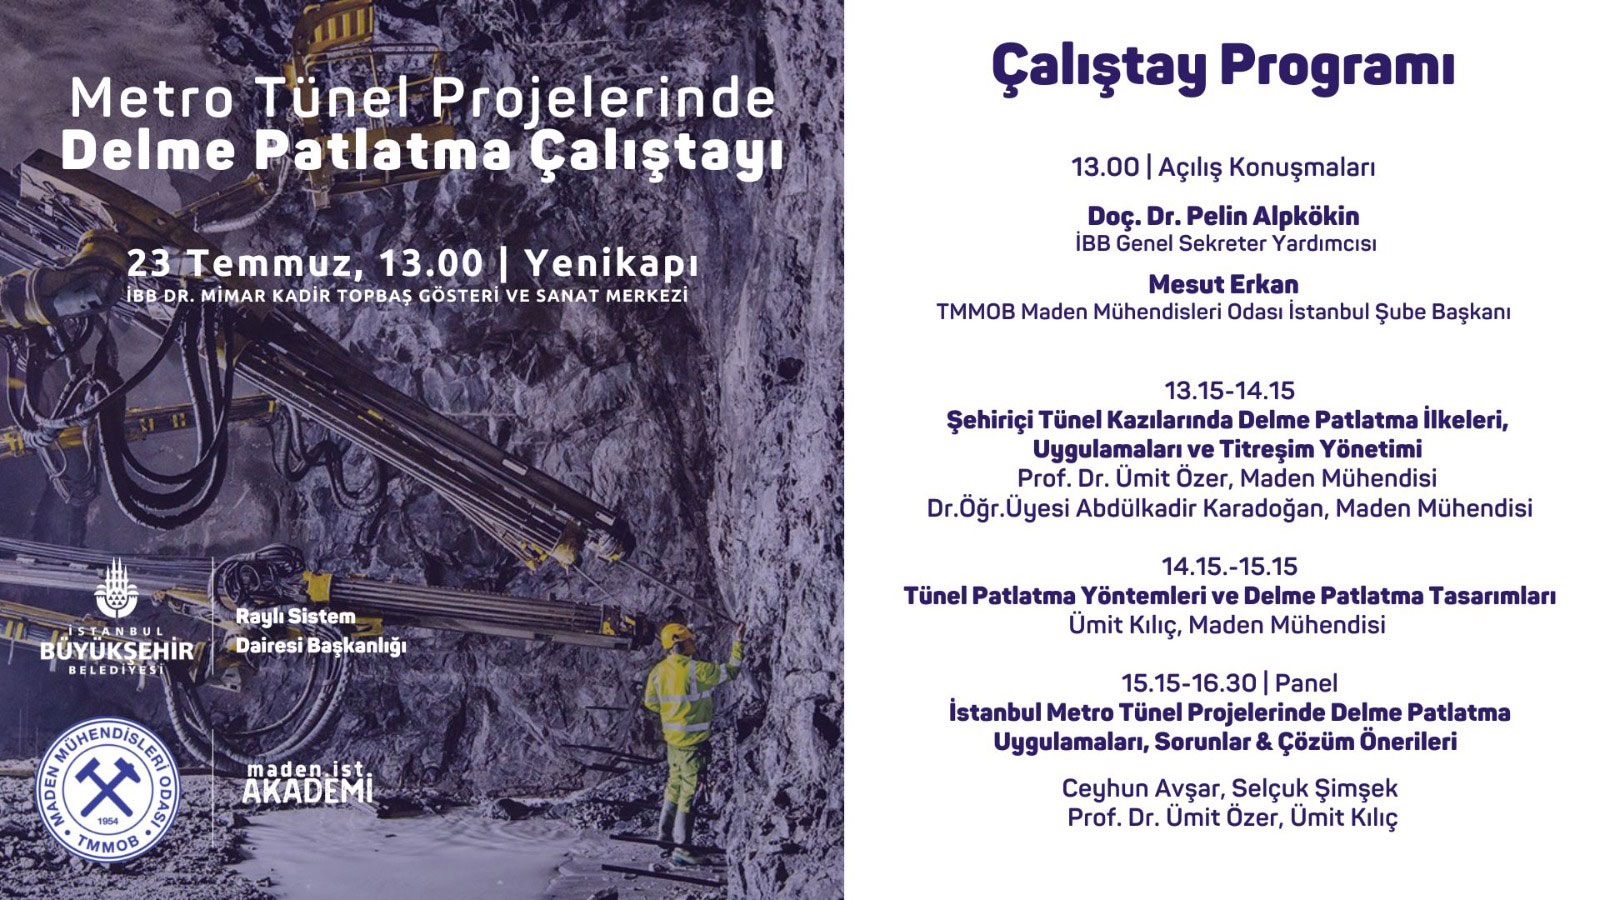 Metro Tünel Projelerinde Delme Patlatma Çalıştayı  23 Temmuz Cumartesi İstanbul